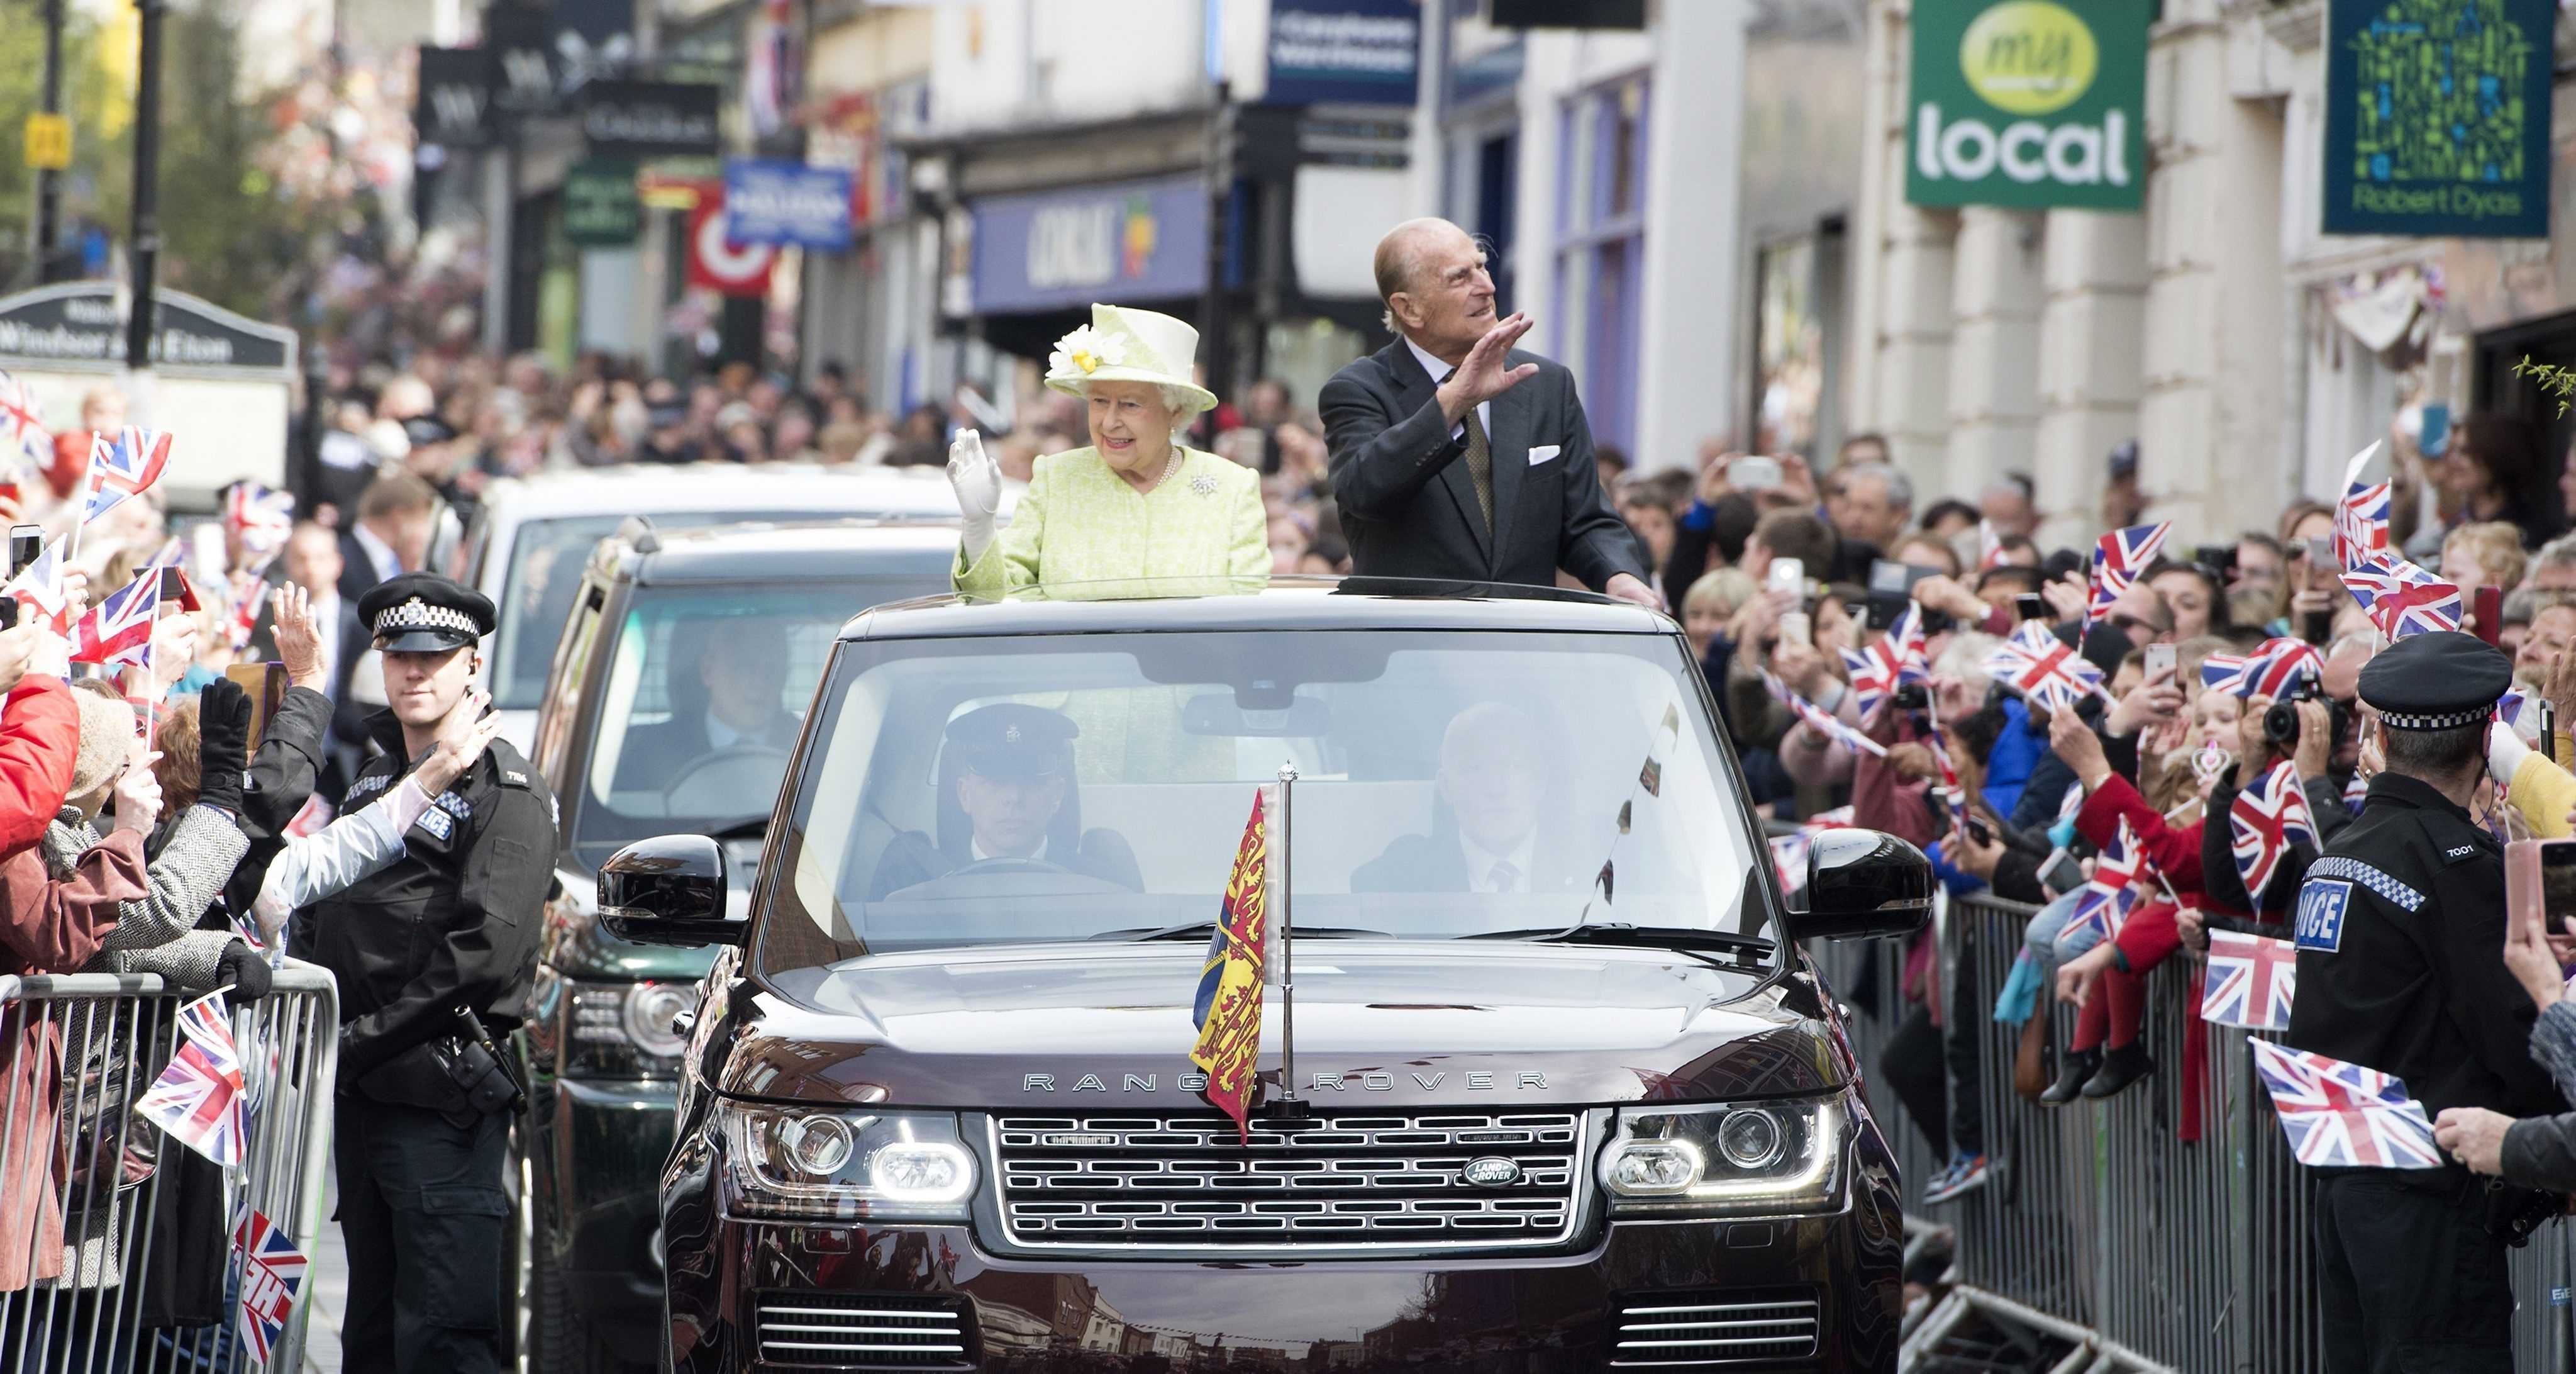 GALERIA: Els anglesos es bolquen en les celebracions dels 90 anys de la reina